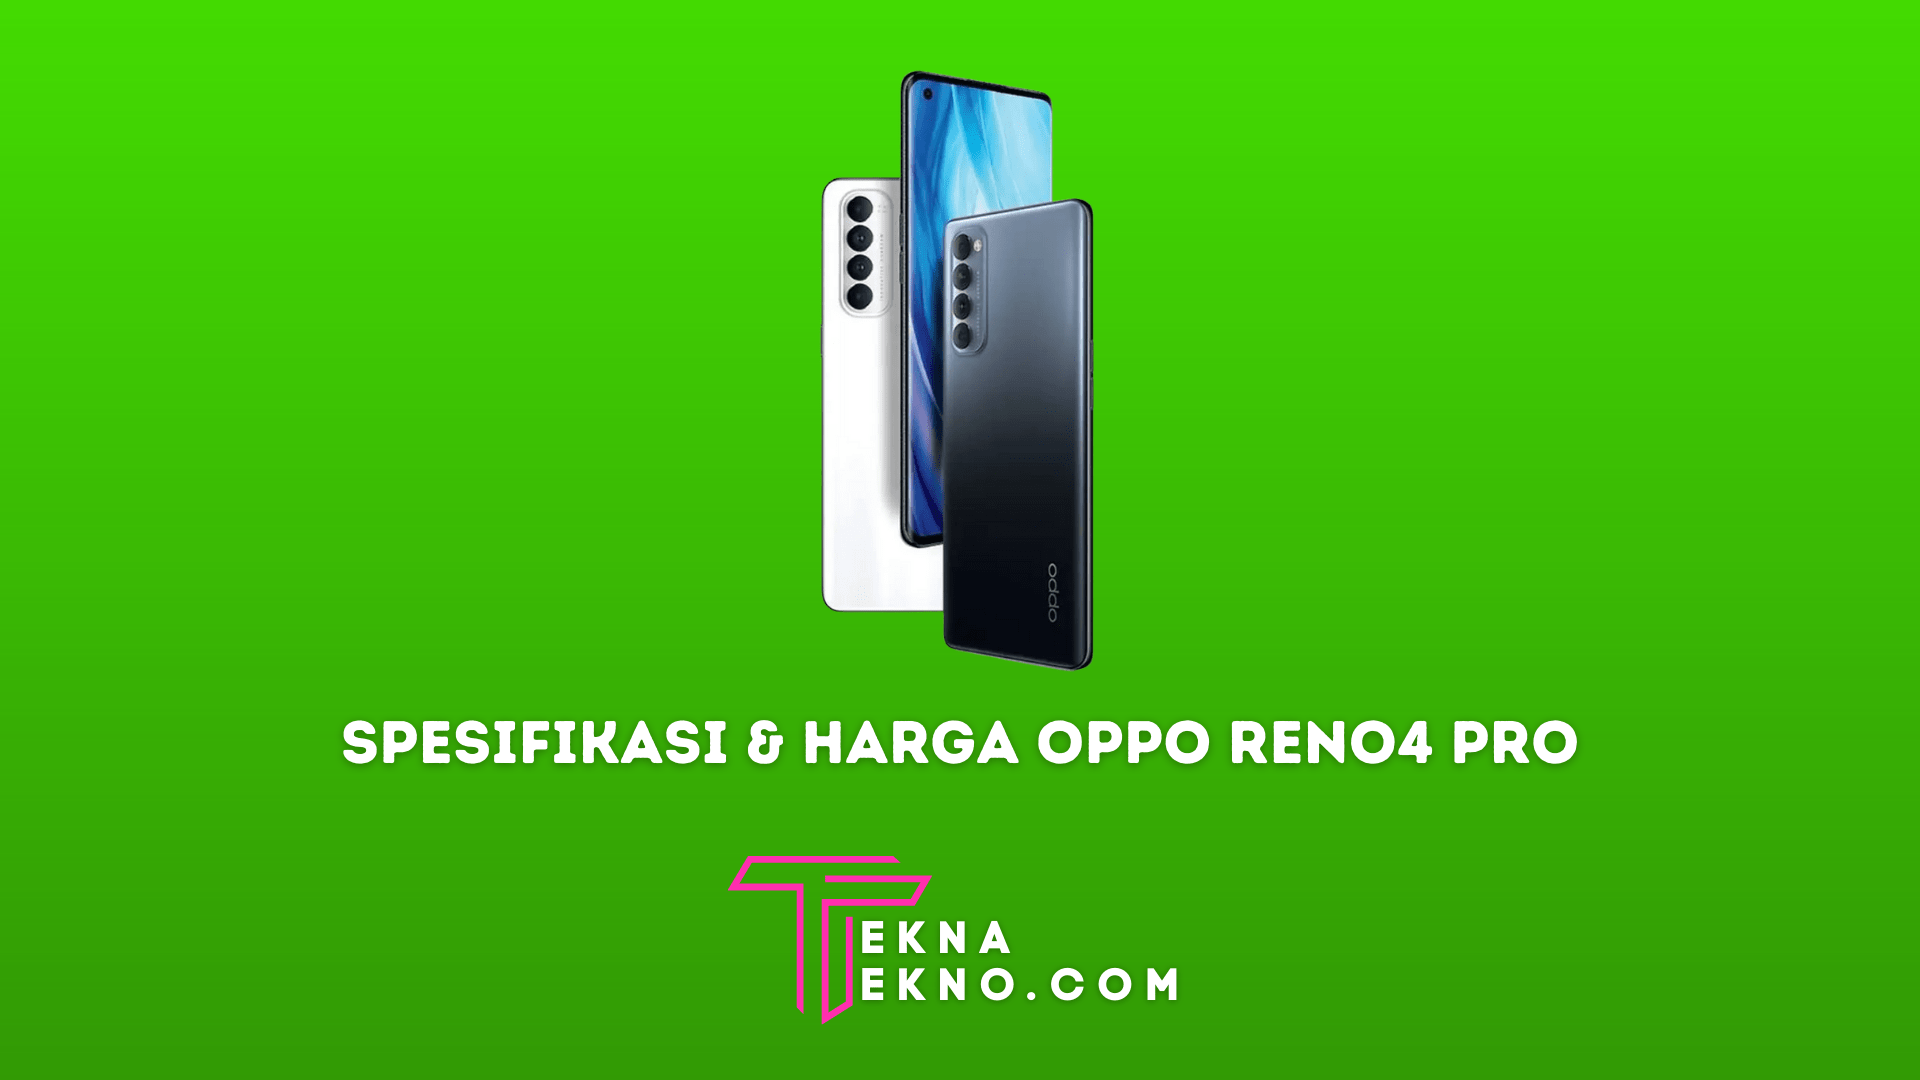 Spesifikasi dan Harga Oppo Reno4 Pro di Indonesia